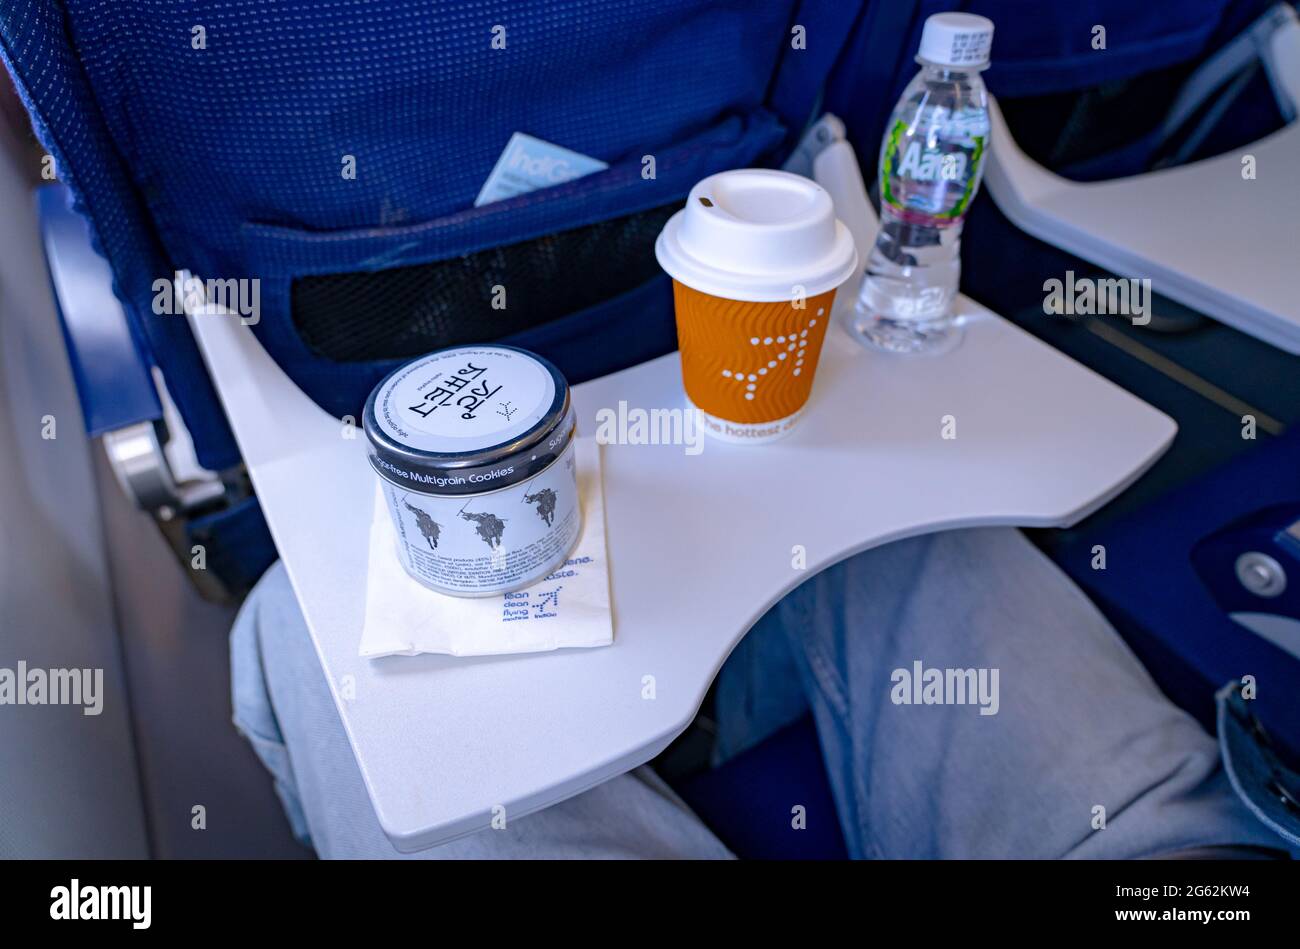 Una lata de galletas multigrano sin azúcar, café y una botella de agua sirvió como parte de la comida en vuelo en las aerolíneas Indigo. Foto de stock